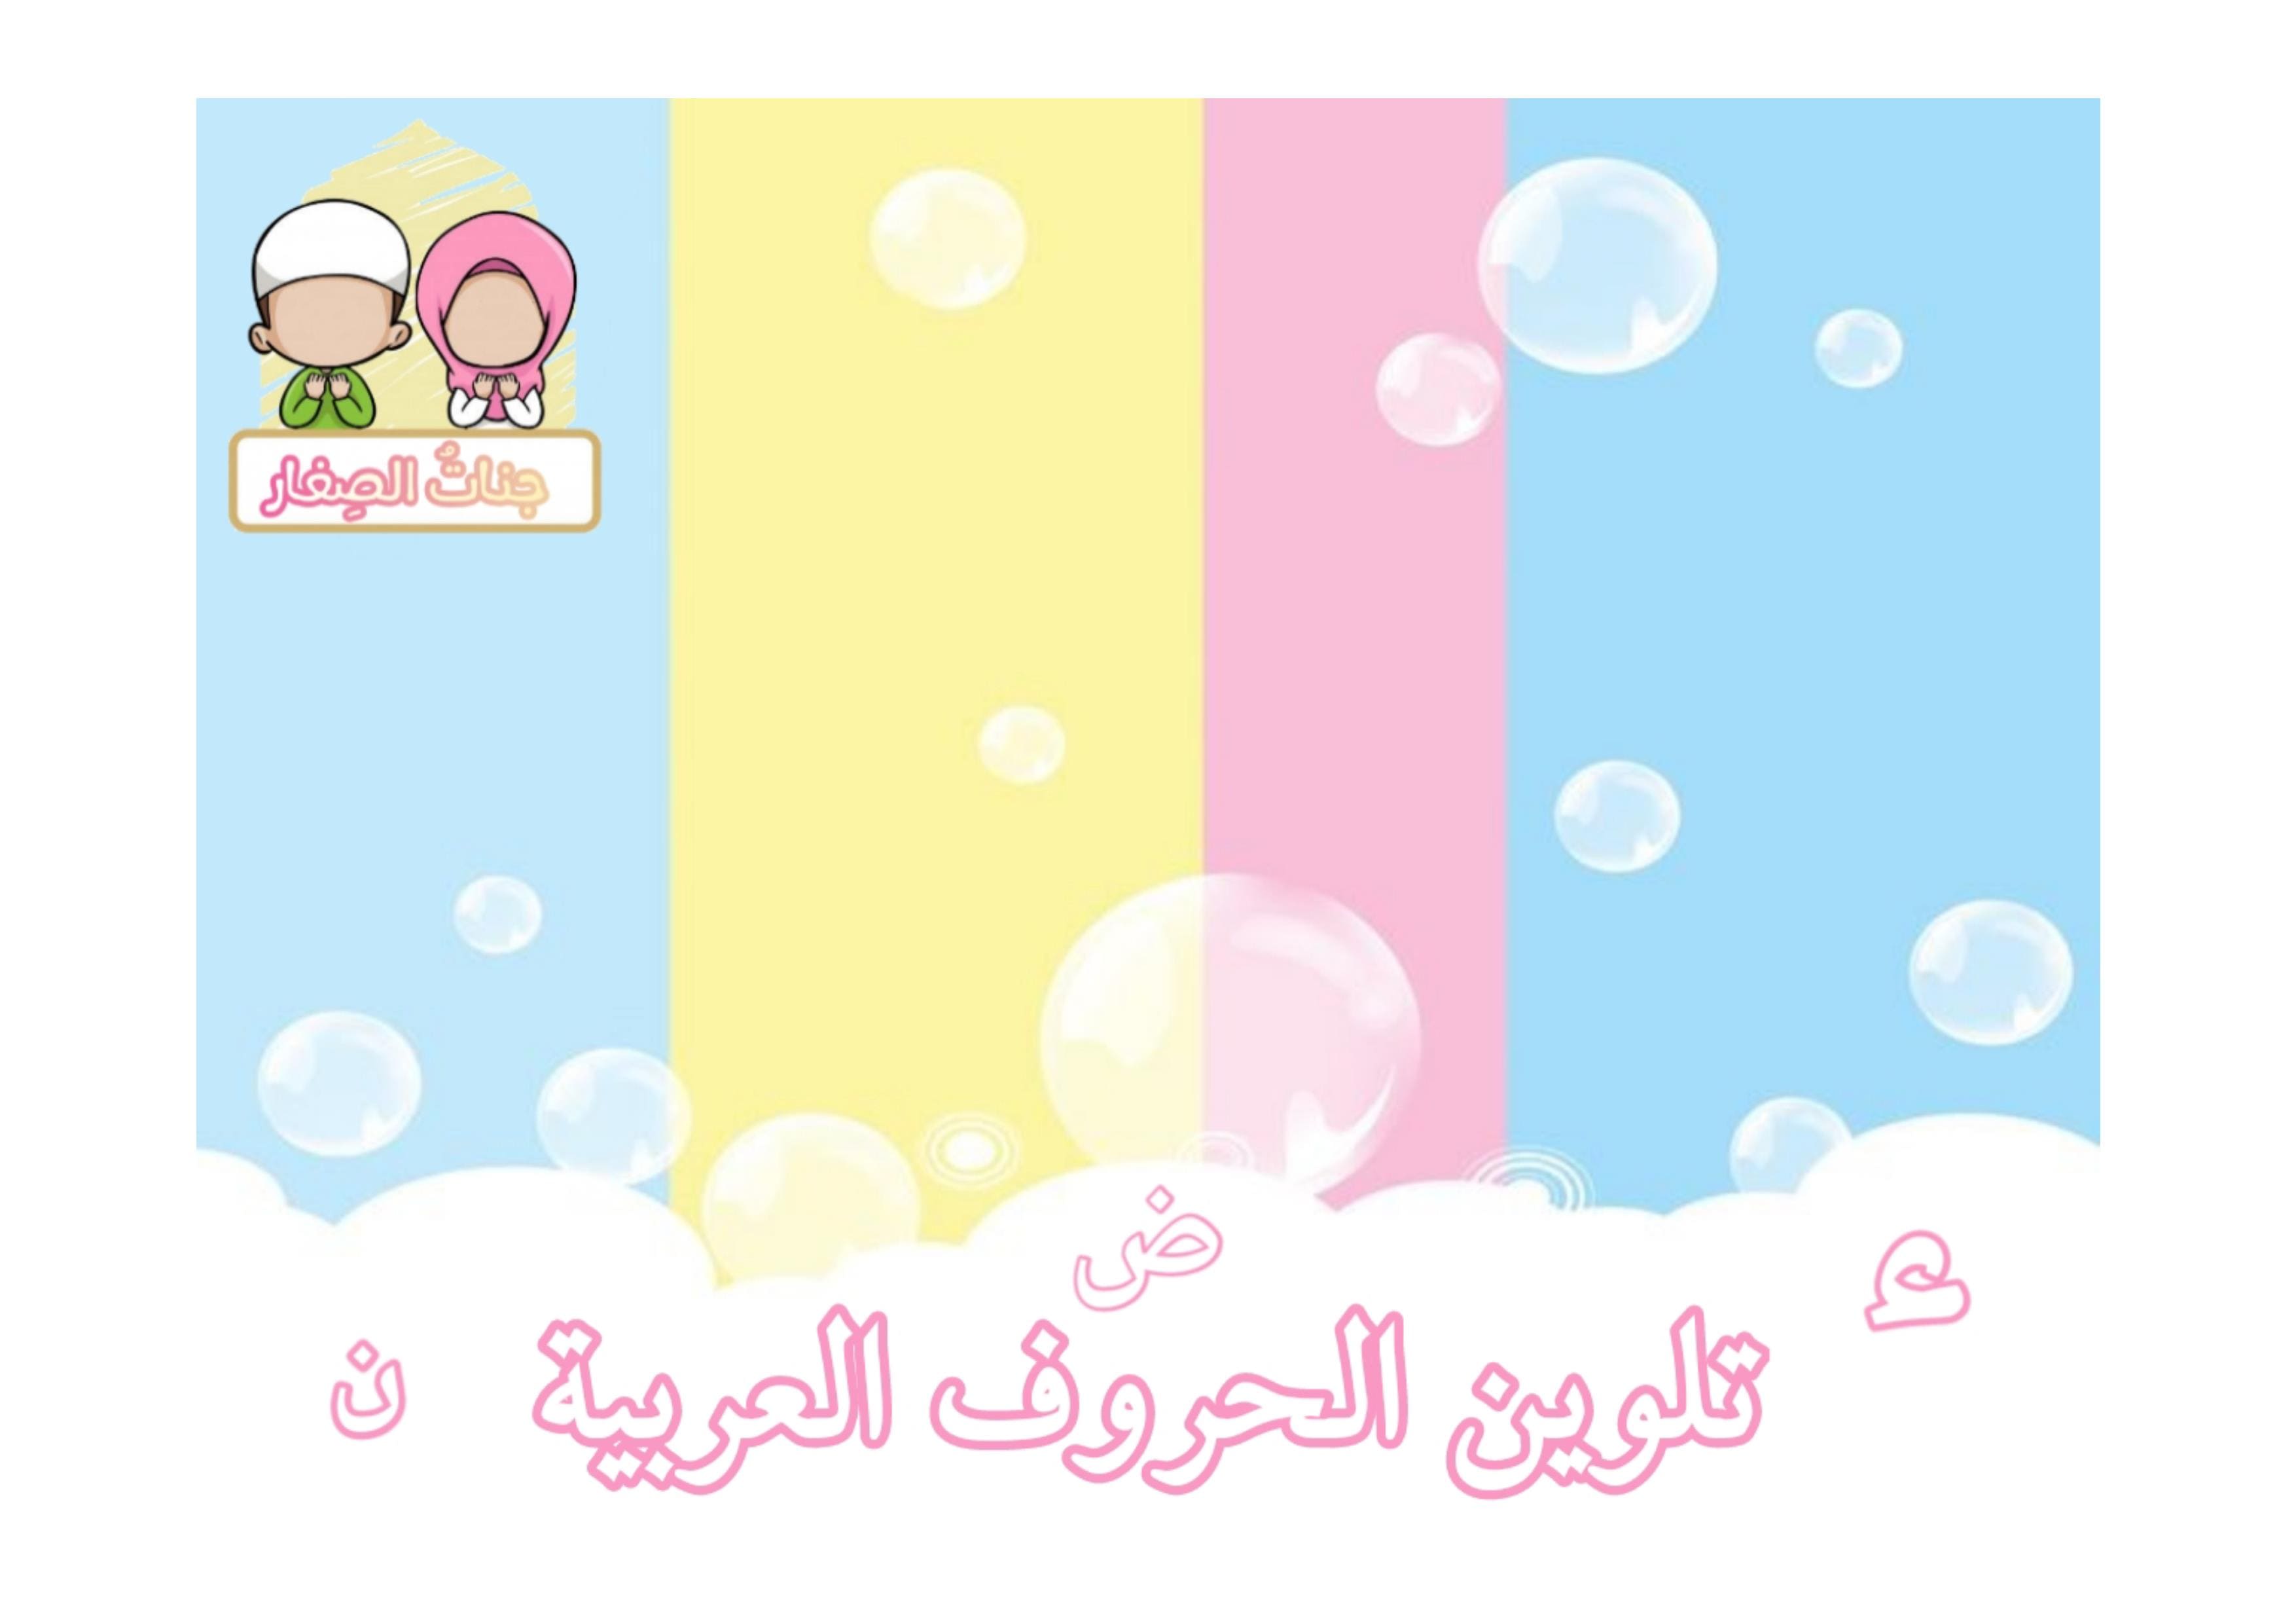 تعليم وتلوين الحروف العربية للاطفال الروضة بشكل بسيط